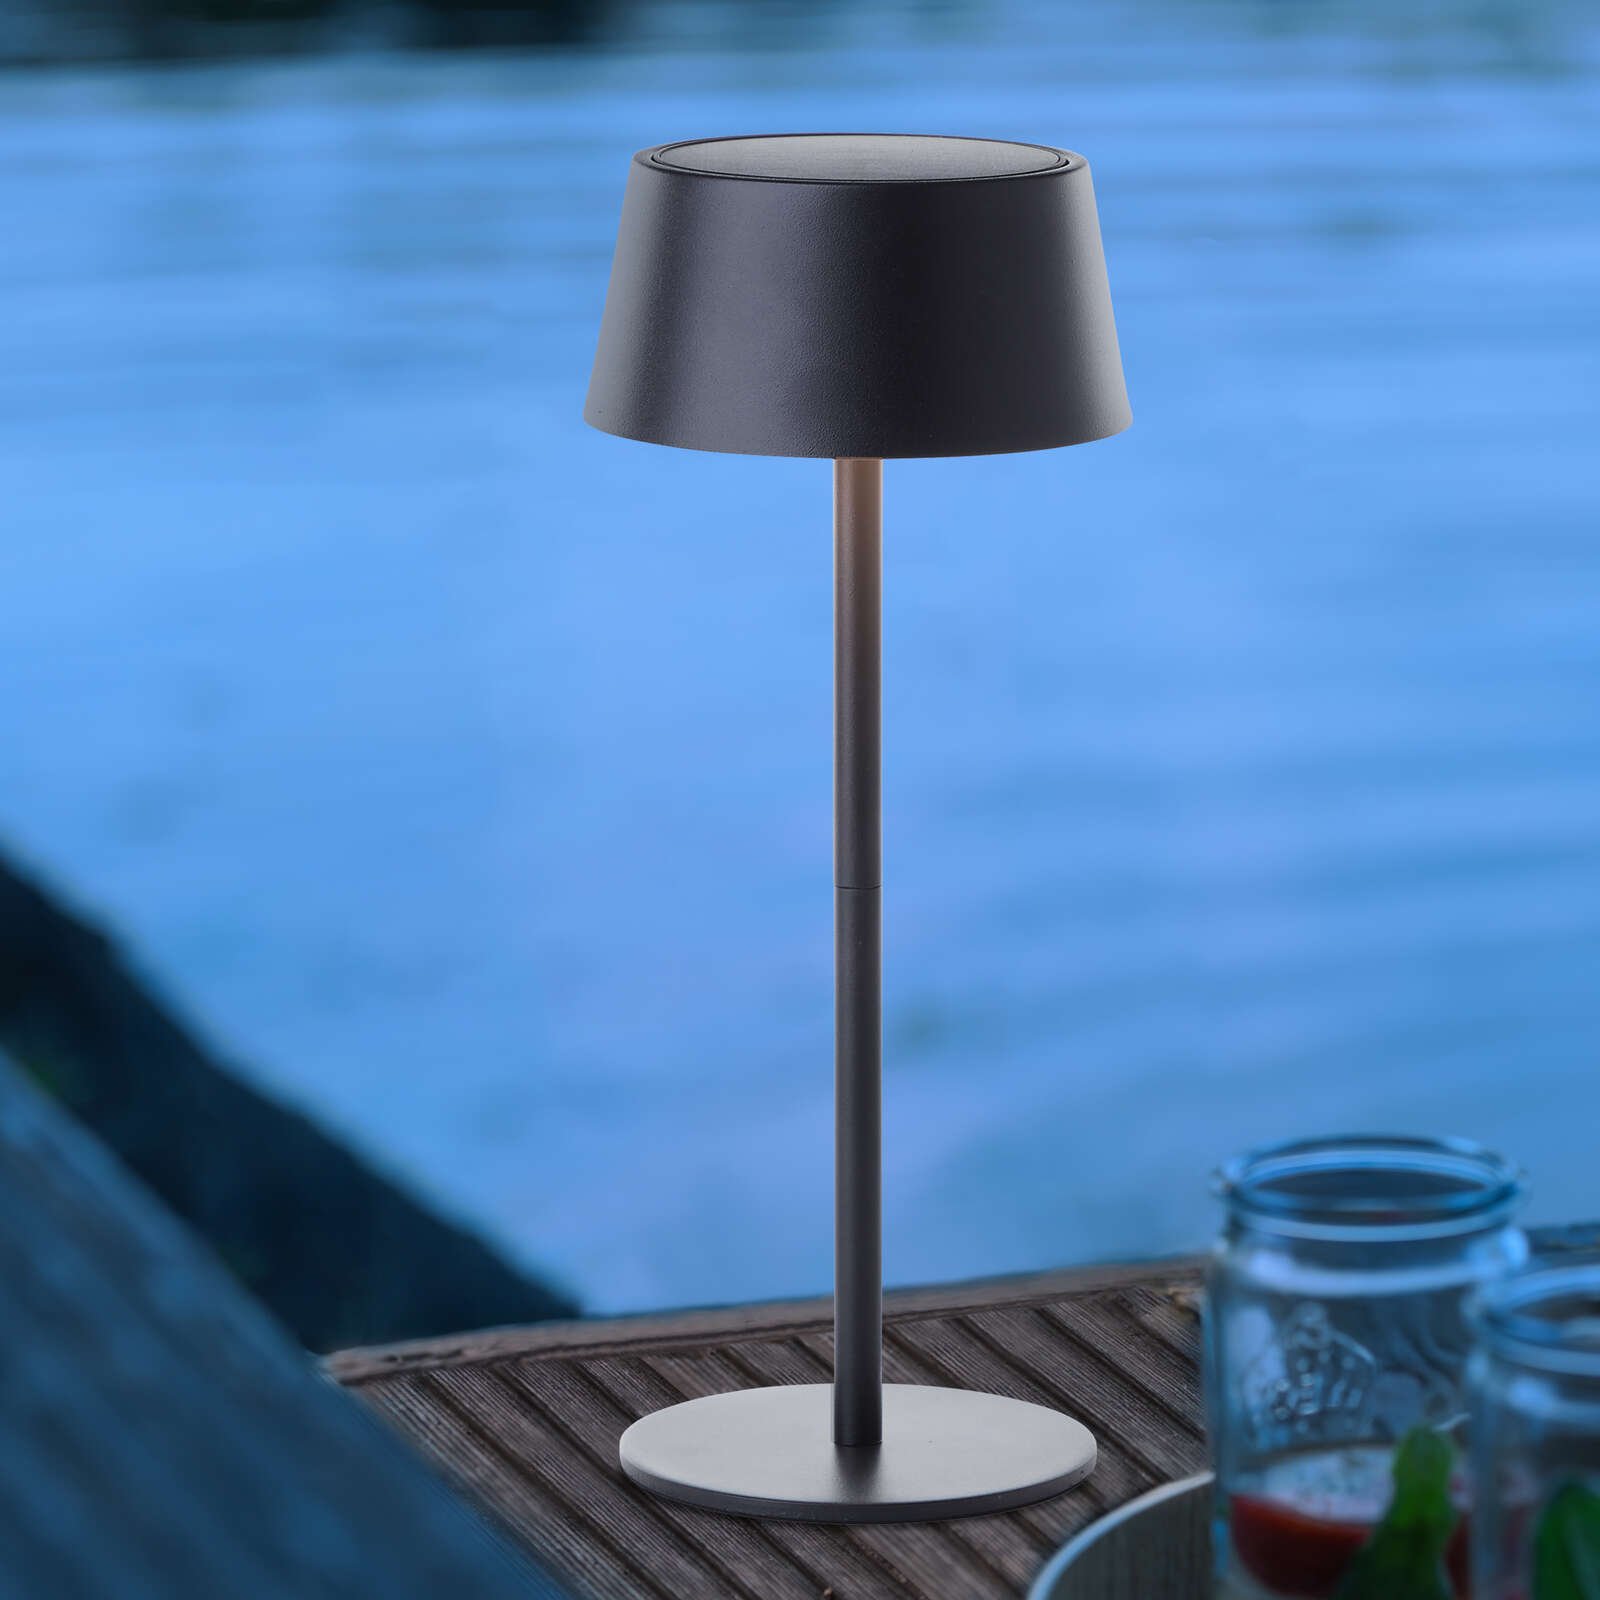             Lampada da tavolo in metallo - Outy 3 - Nero
        